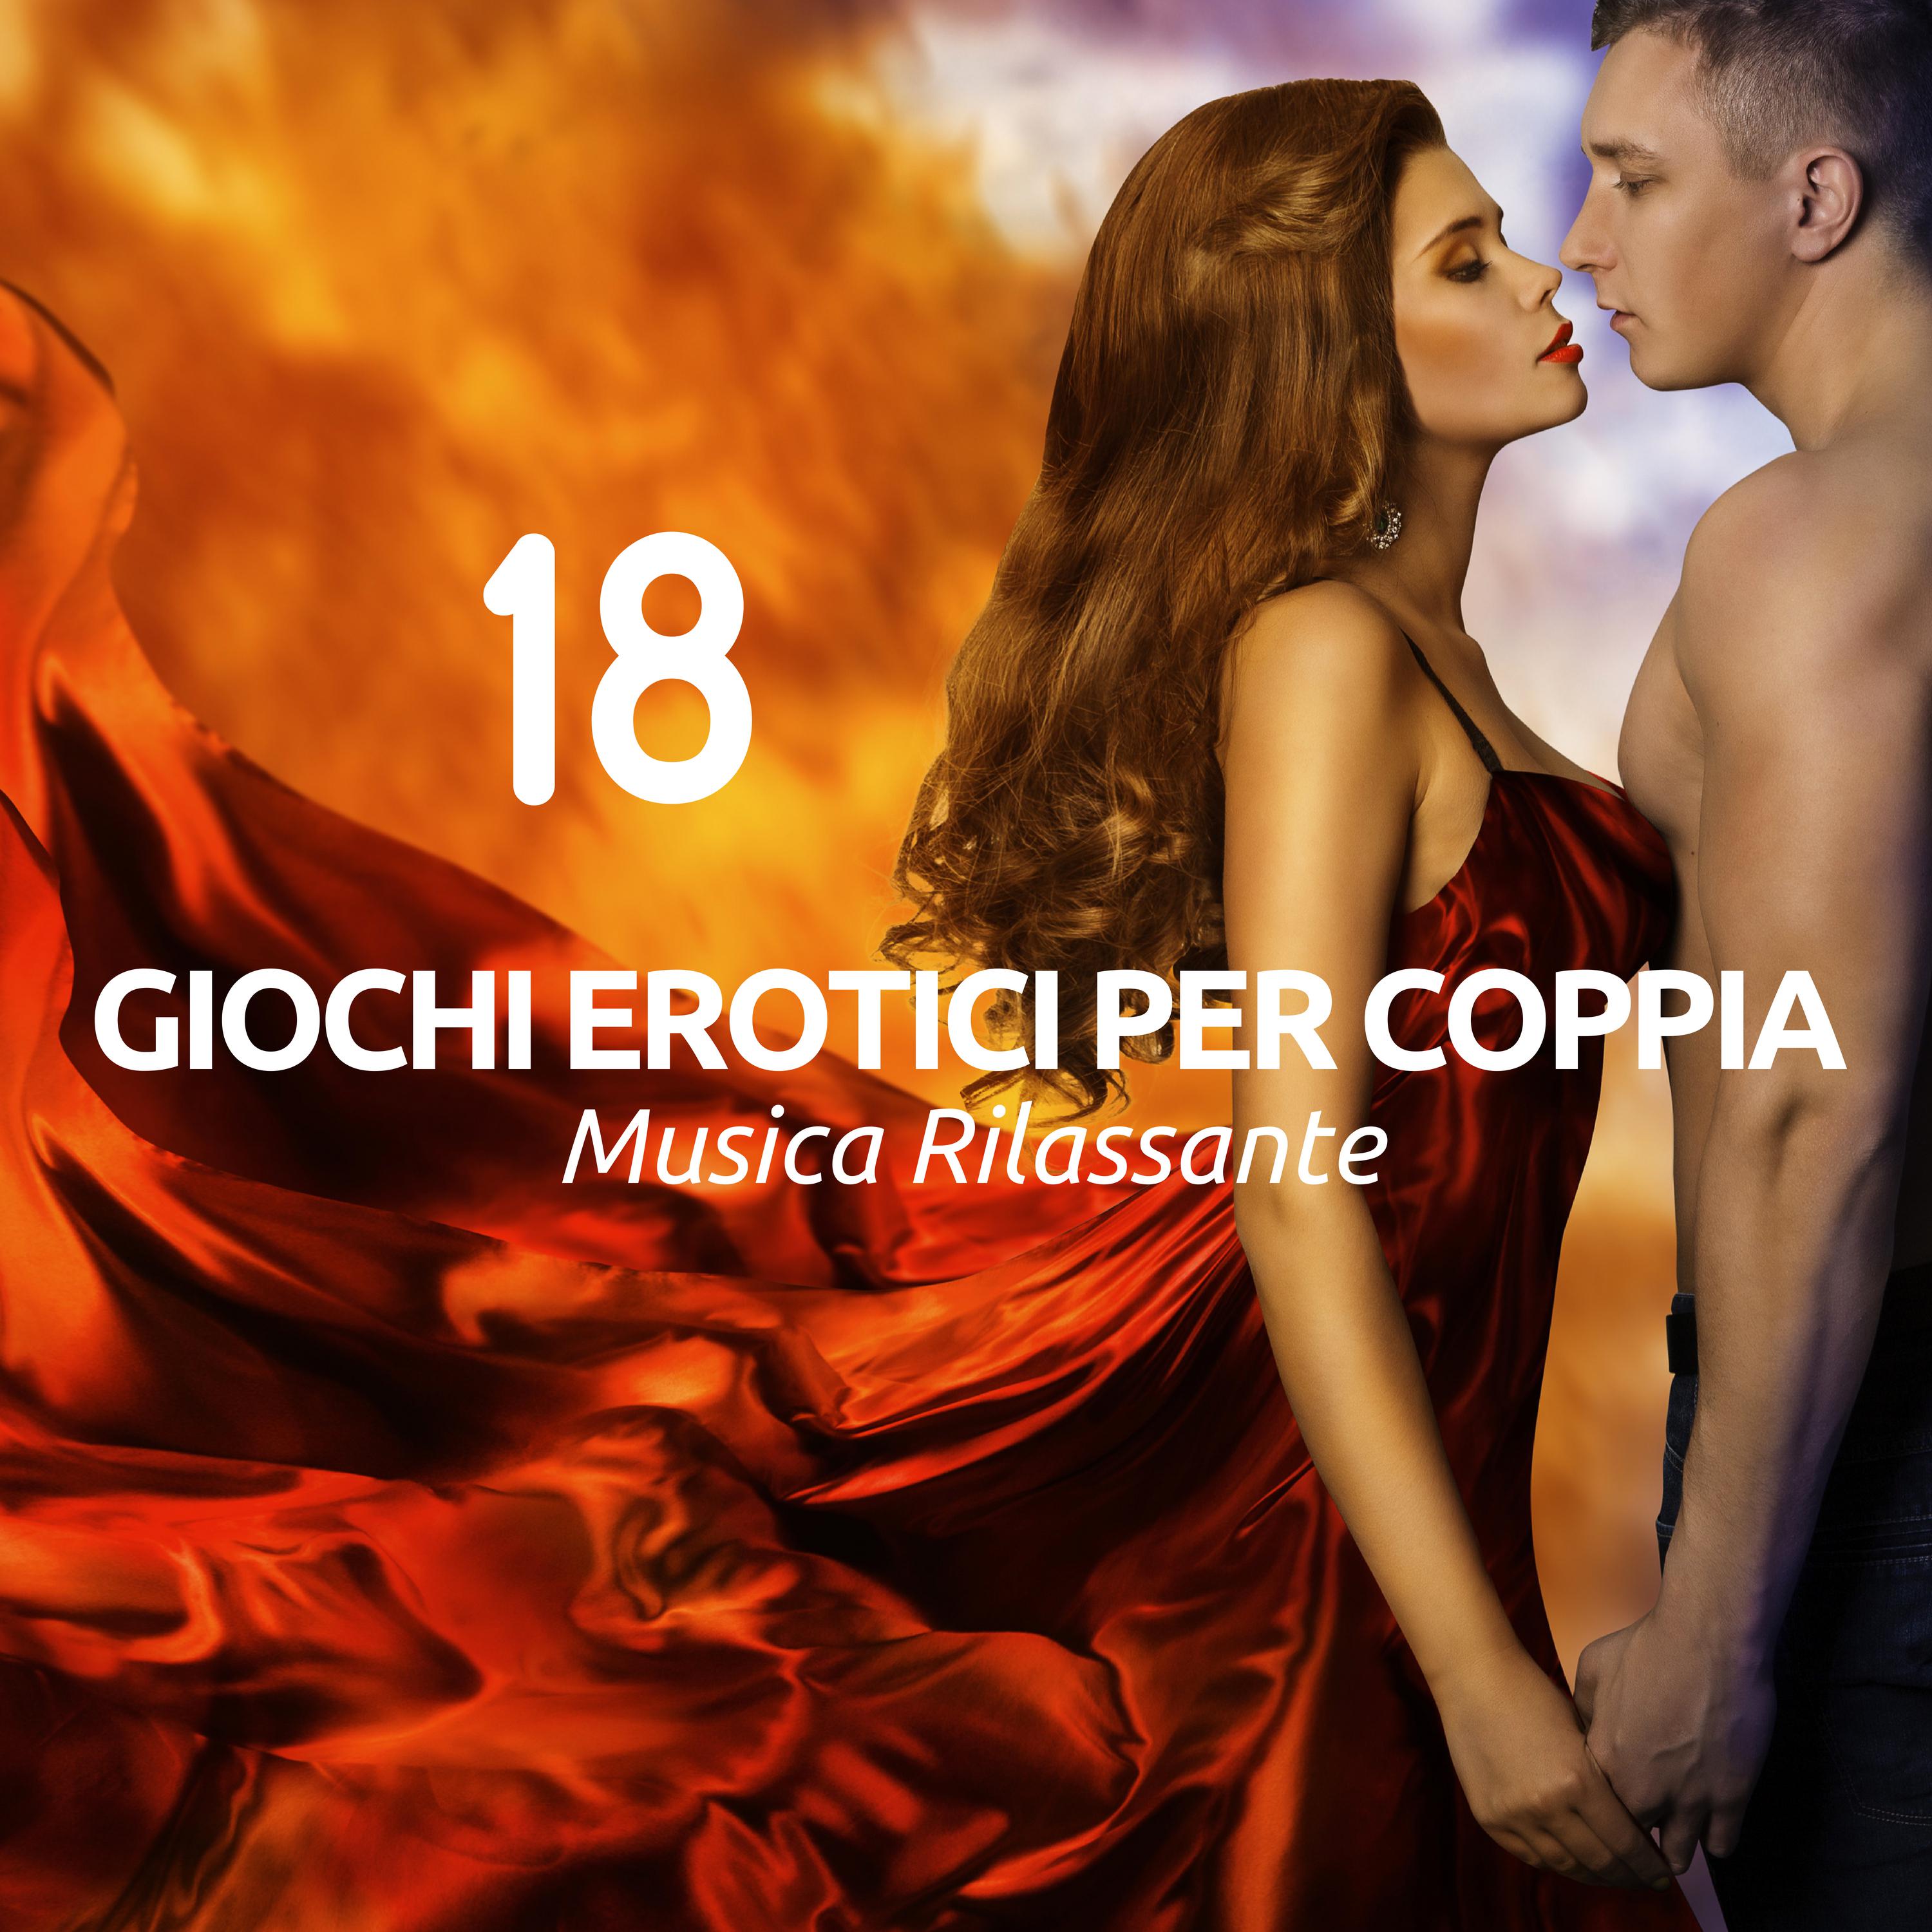 18 Giochi Erotici per Coppia - Musica Rilassante per Atmosfere Calde